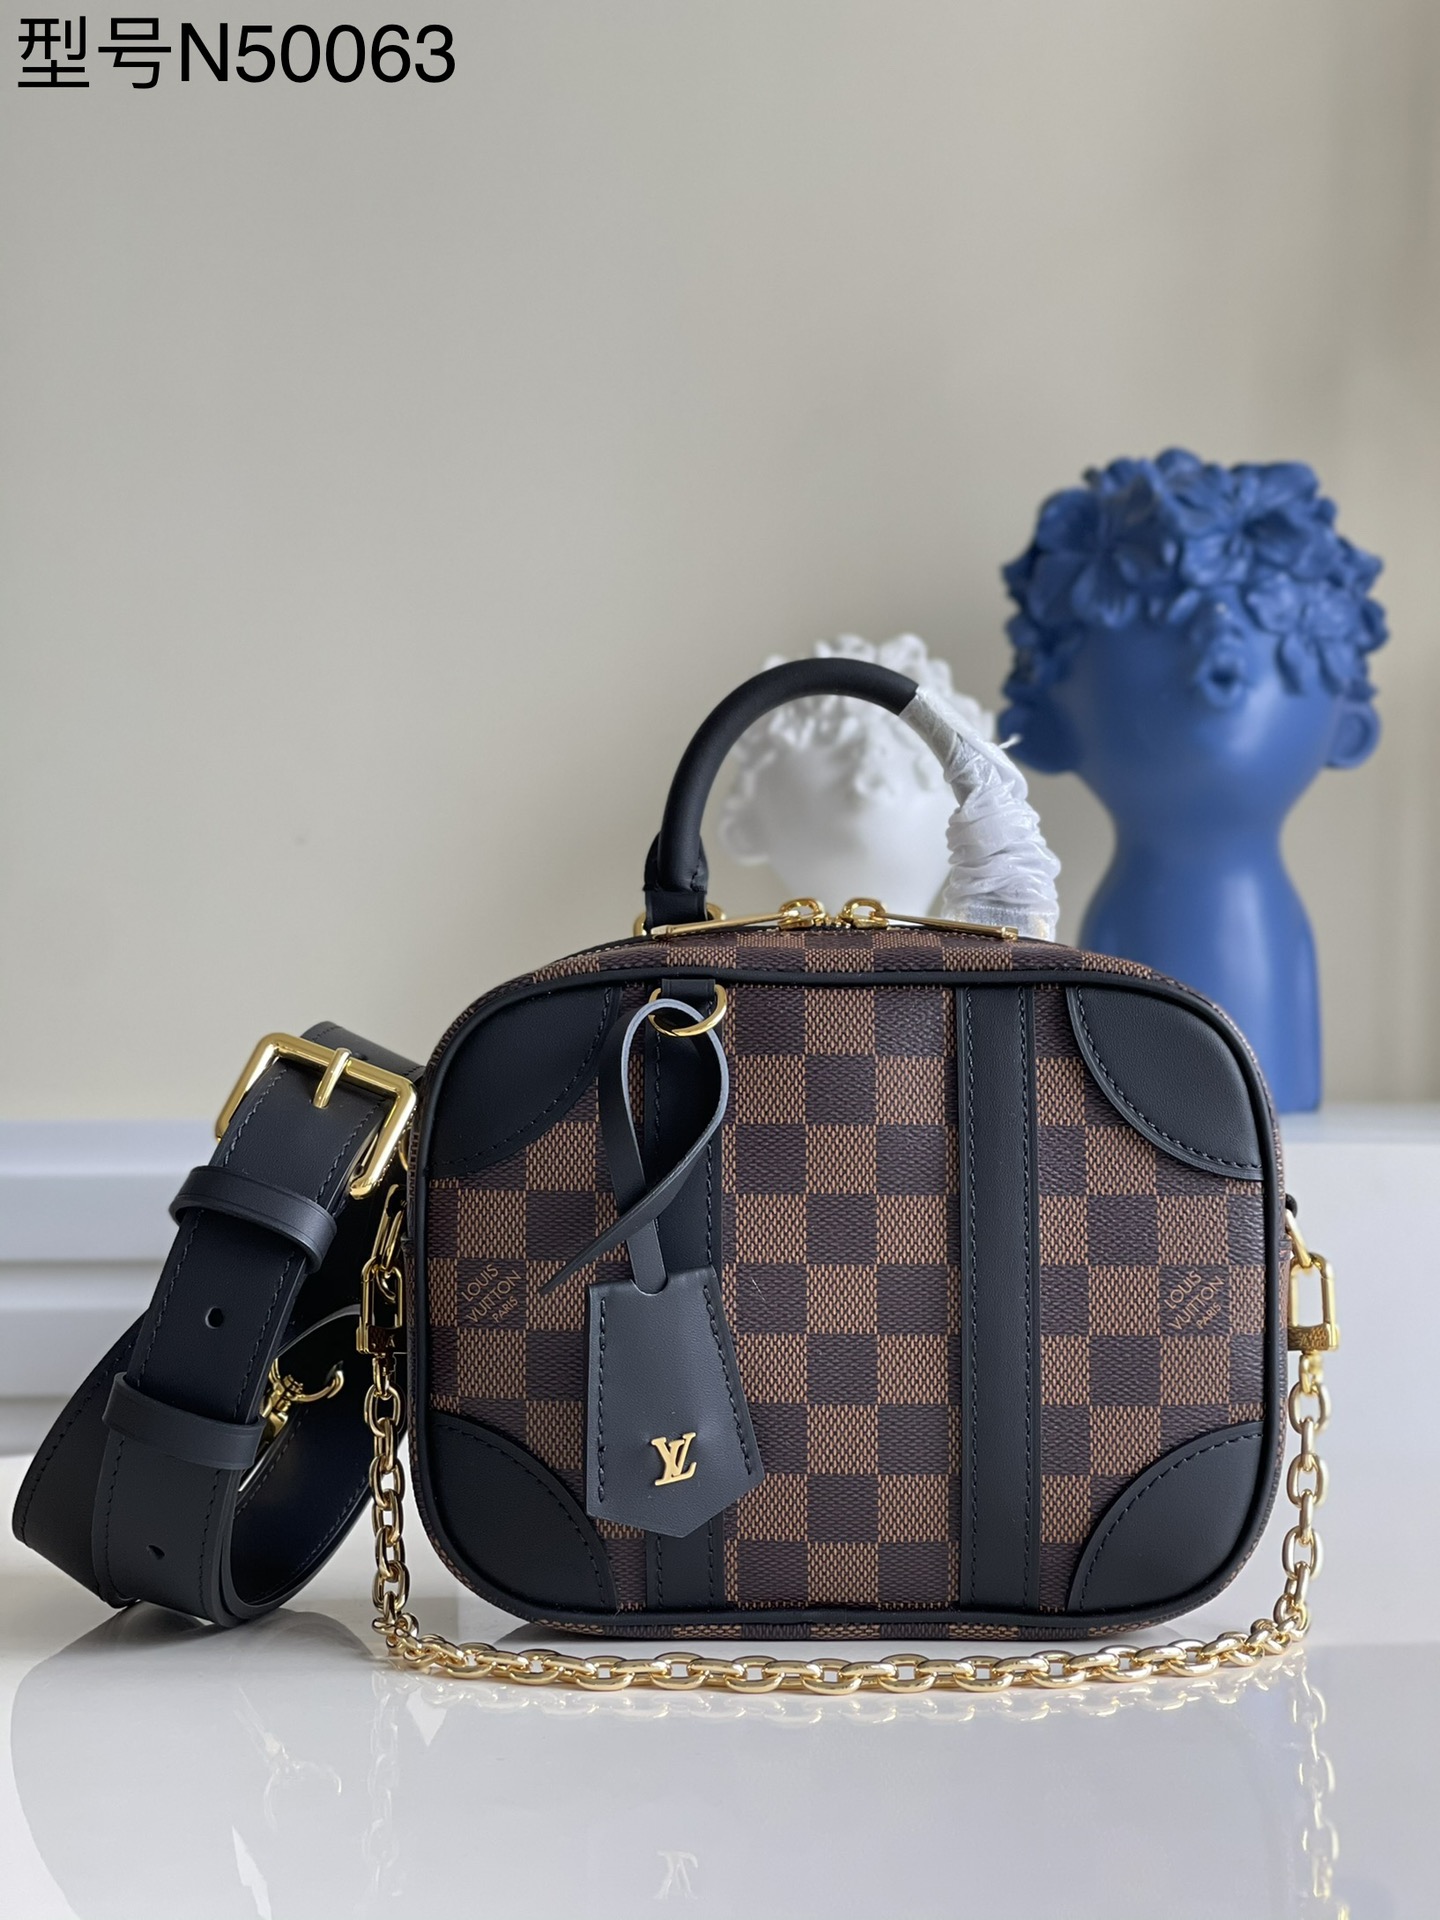 Louis Vuitton Bags Handbags Black Damier Ebene Canvas Fabric Chains N50063